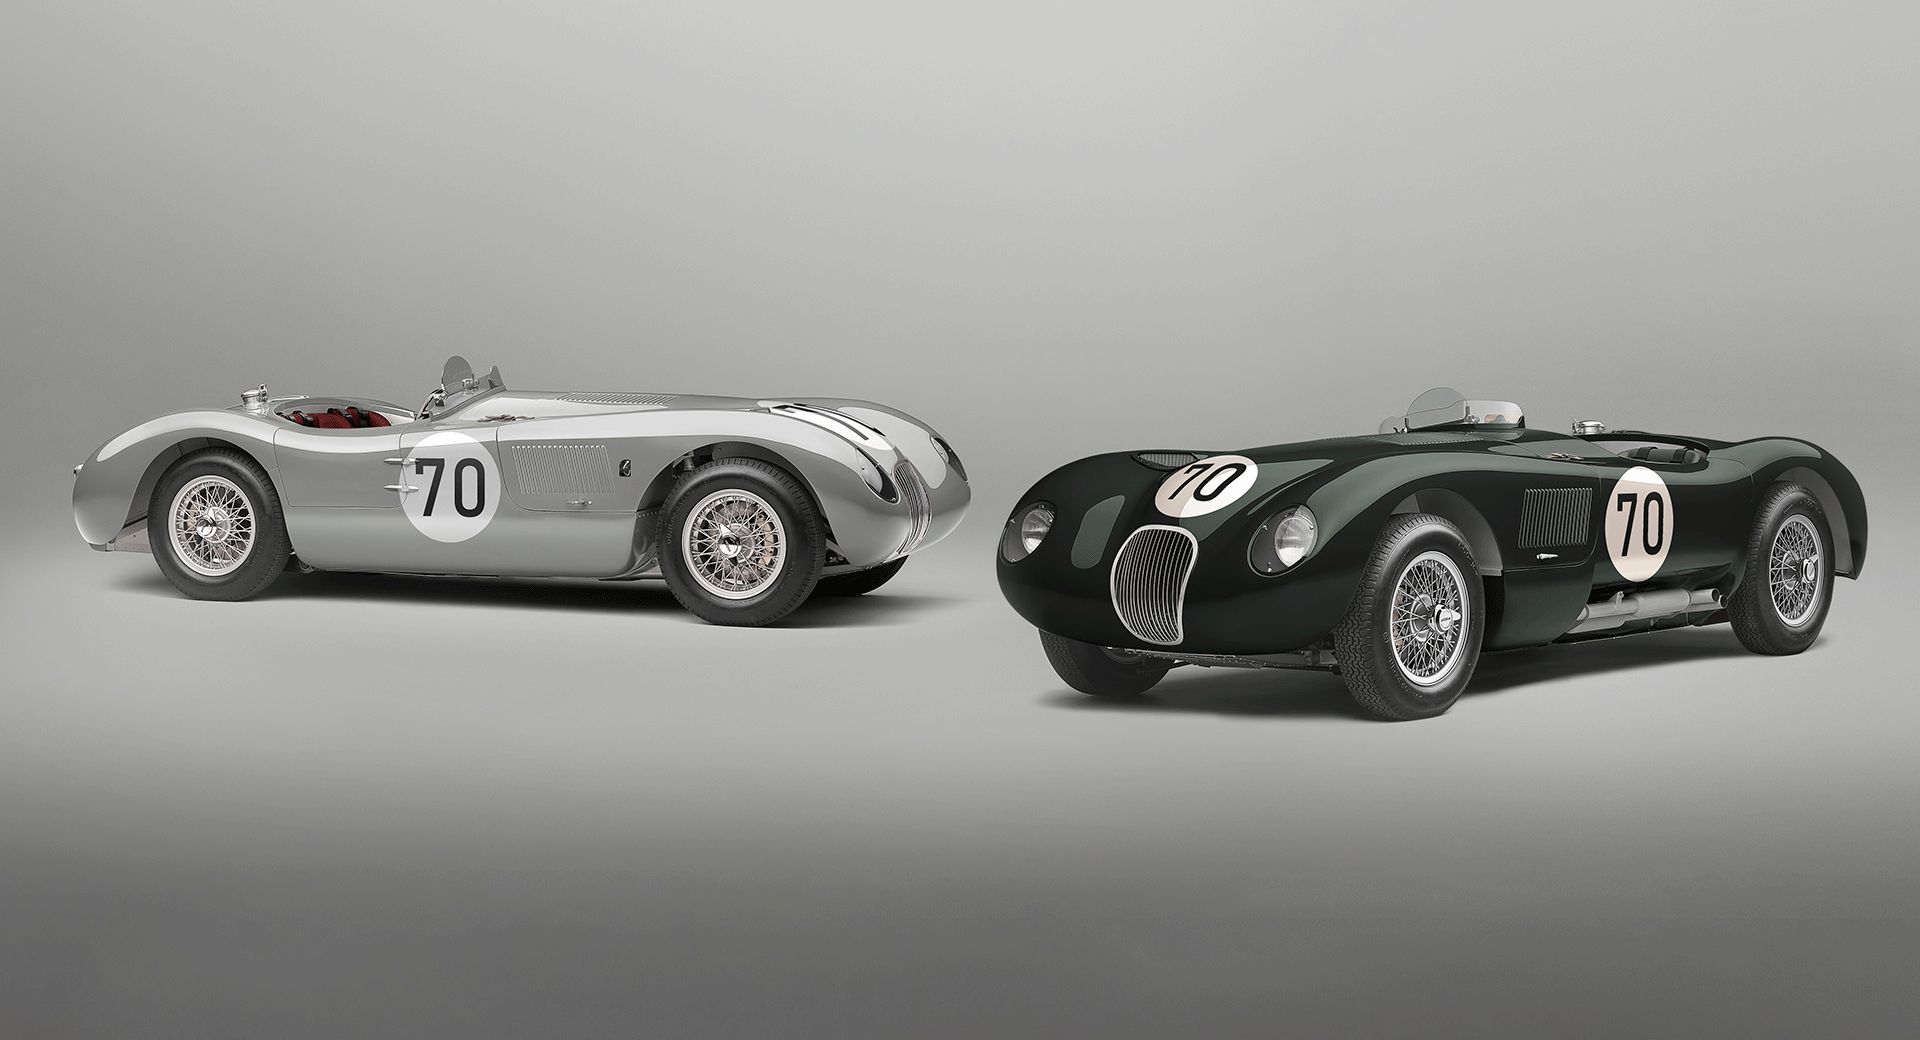 La toute nouvelle Jaguar C-Type Continuation 70-Edition rend hommage au succès des 24 Heures du Mans en 1953